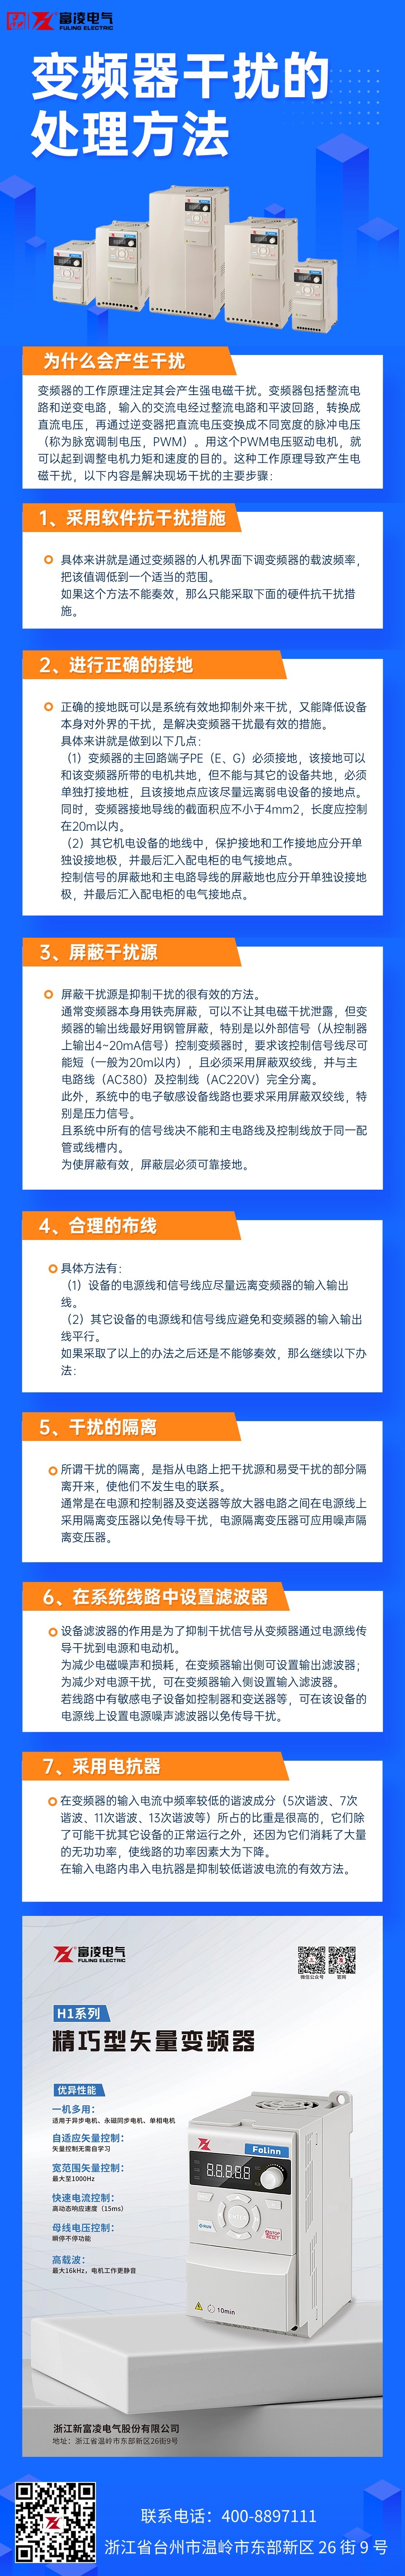 政务民生维权网络暴力治安文章长图(2).jpg